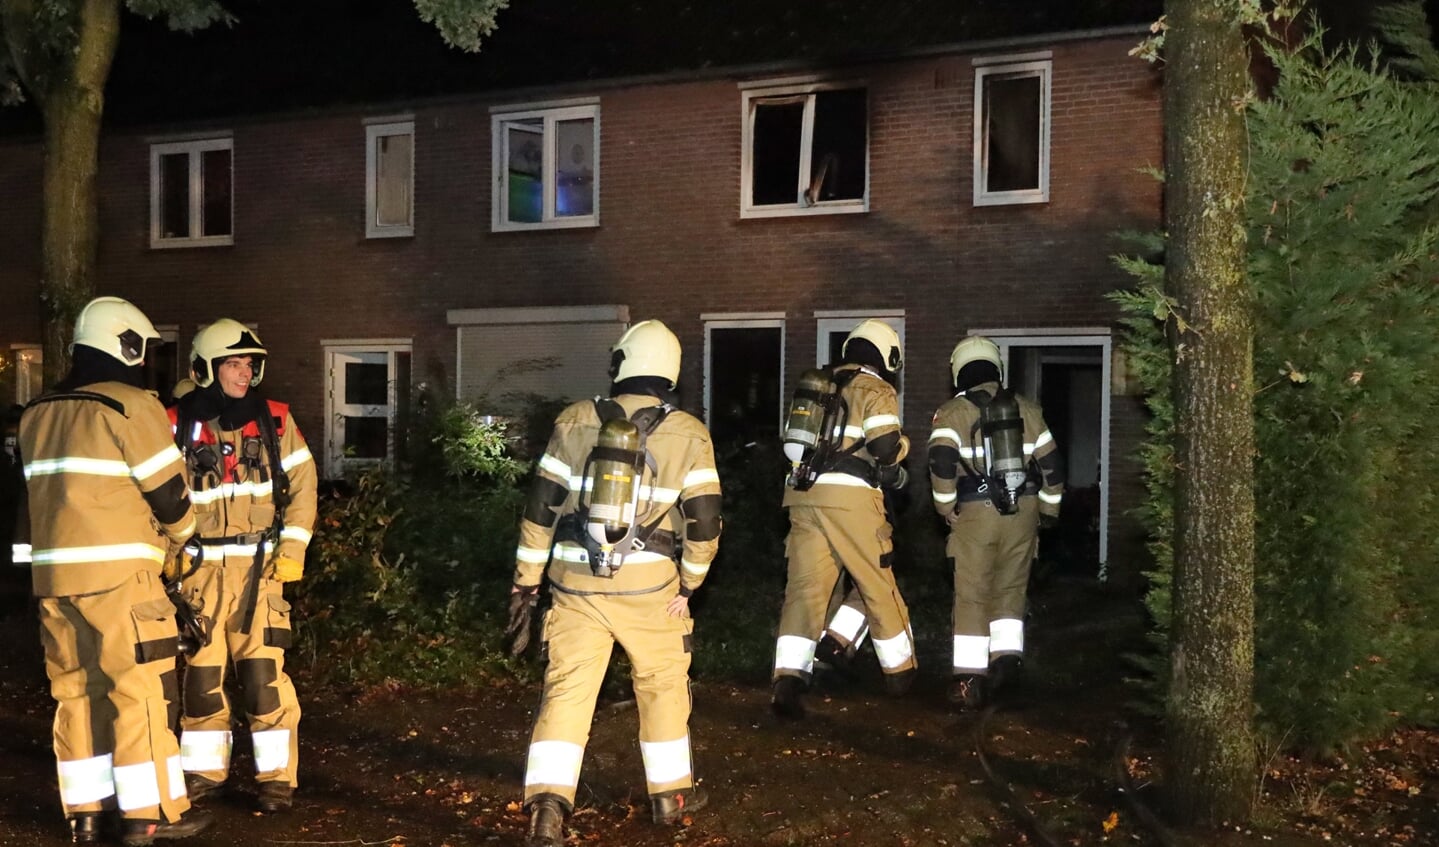 Woningbrand in Overlangel; geen gewonden. (Foto: Marco van den Broek, Foto Mallo)